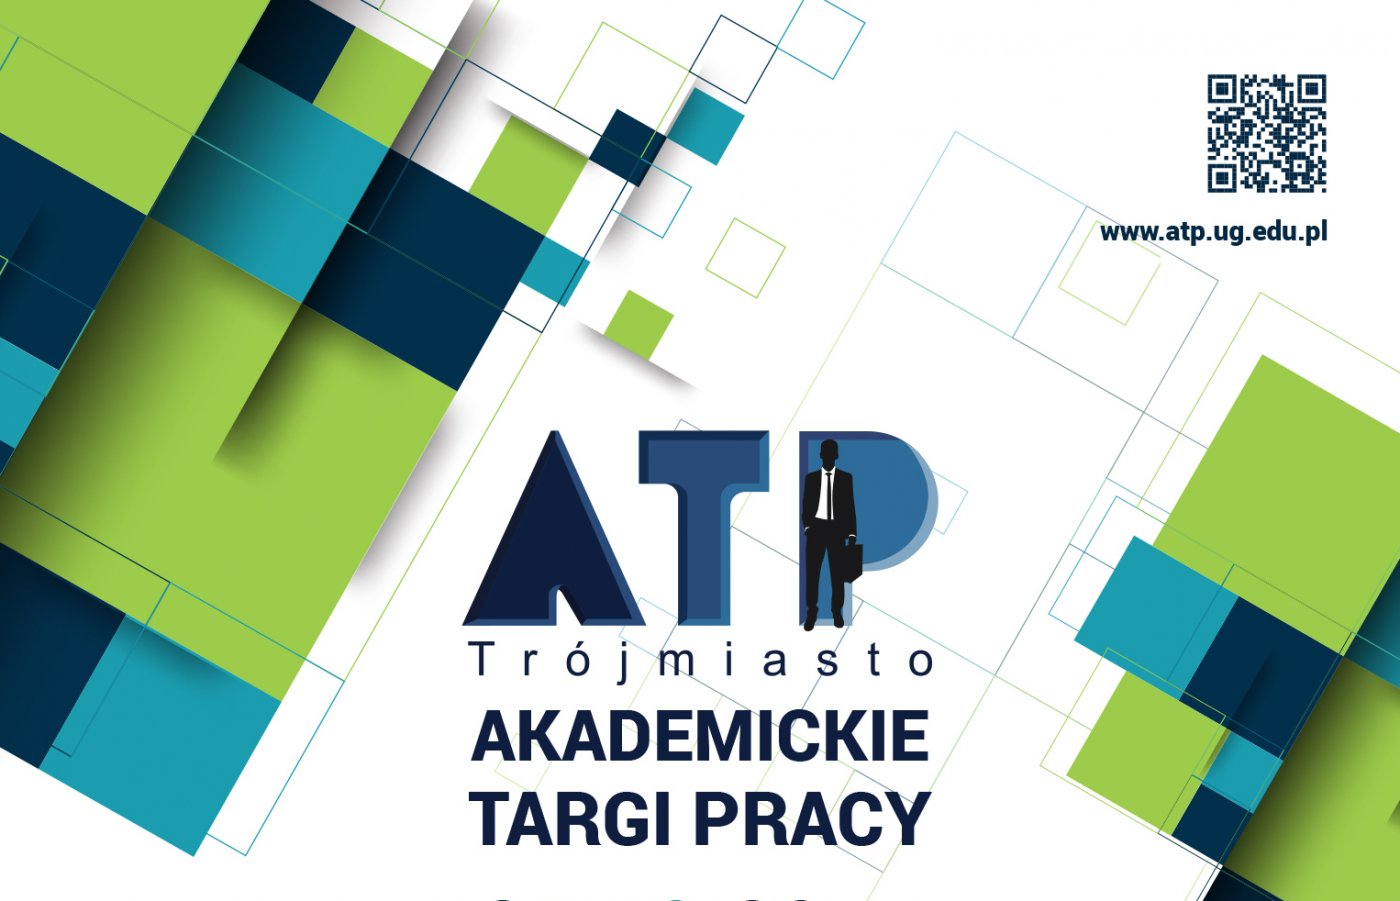 Akademickie Targi Pracy trwają do godziny 16, fot. www.atp.ug.edu.pl